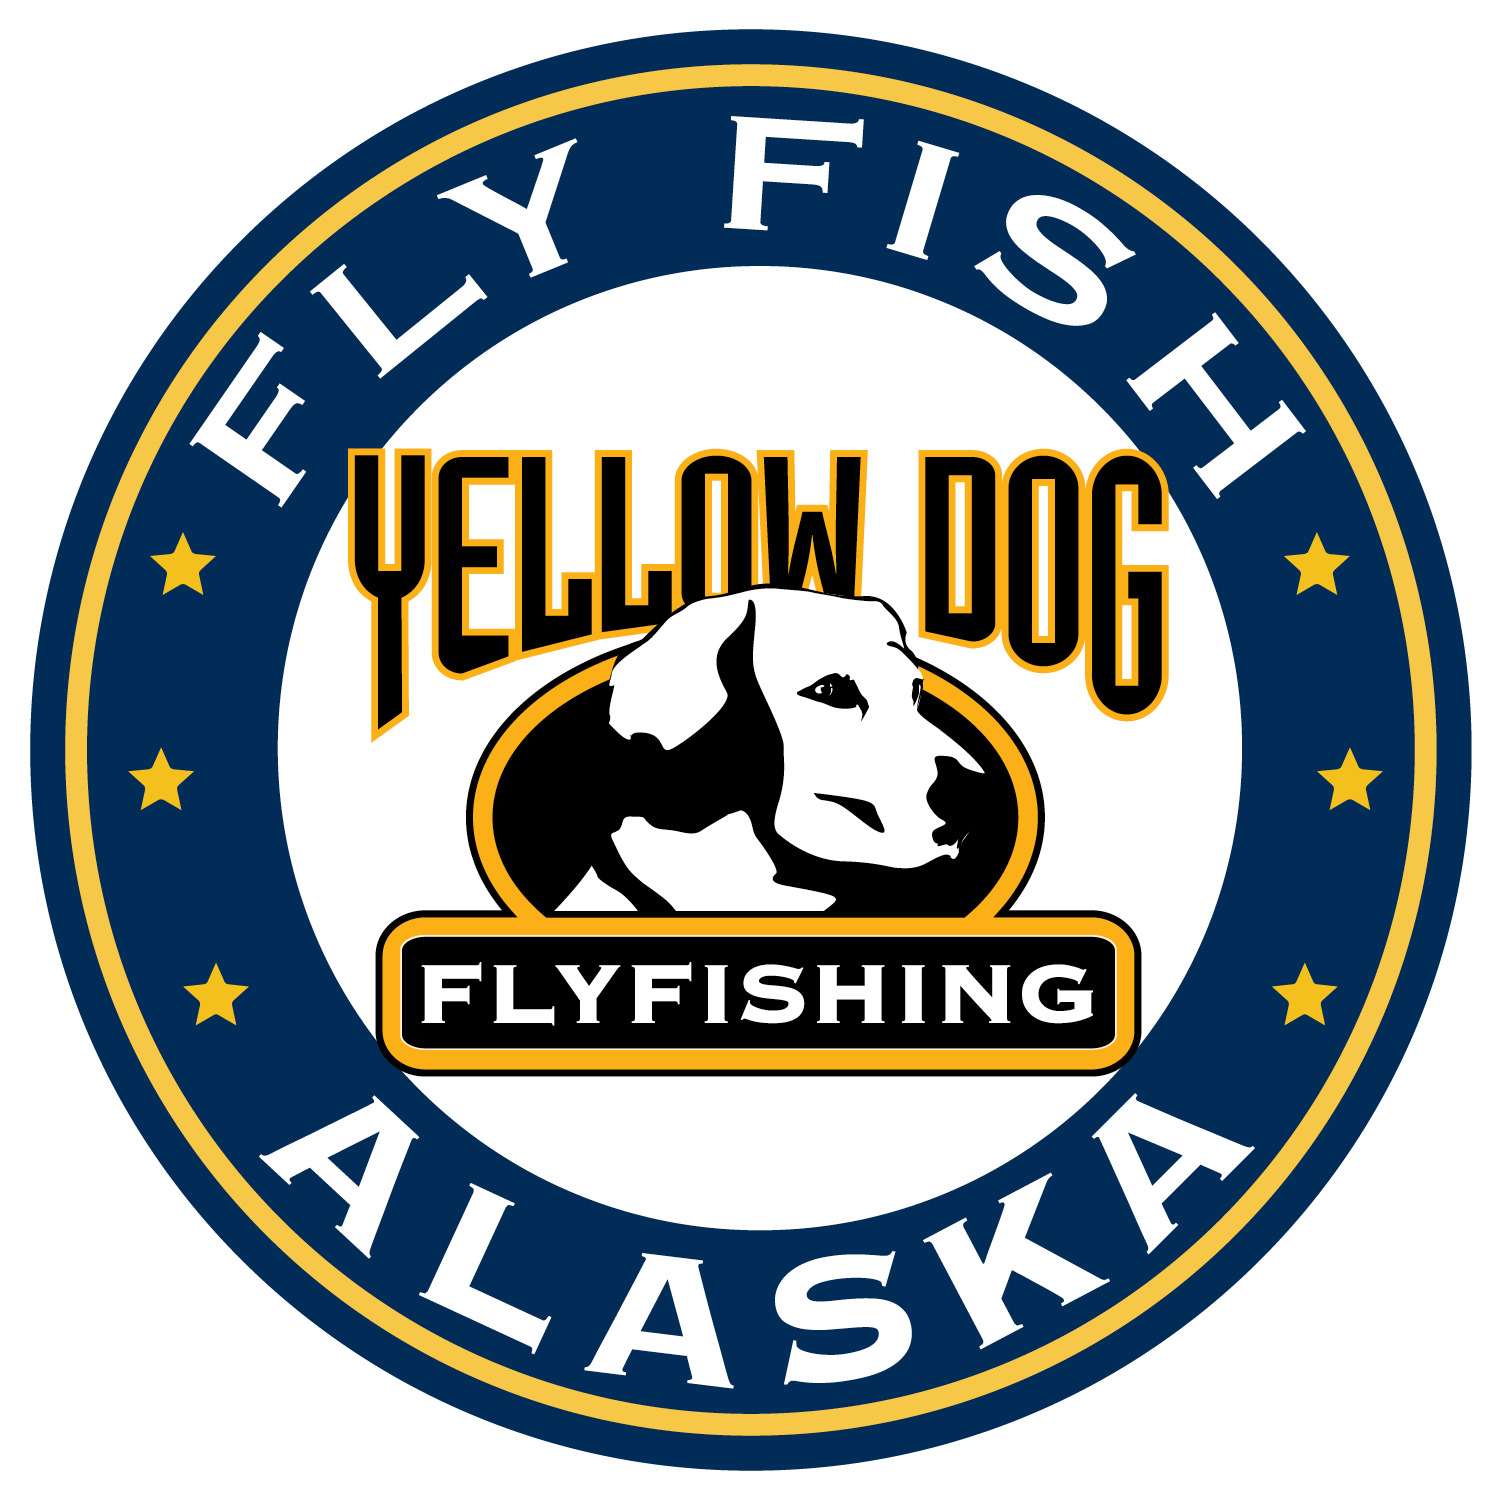 fly fishing trips in alaska